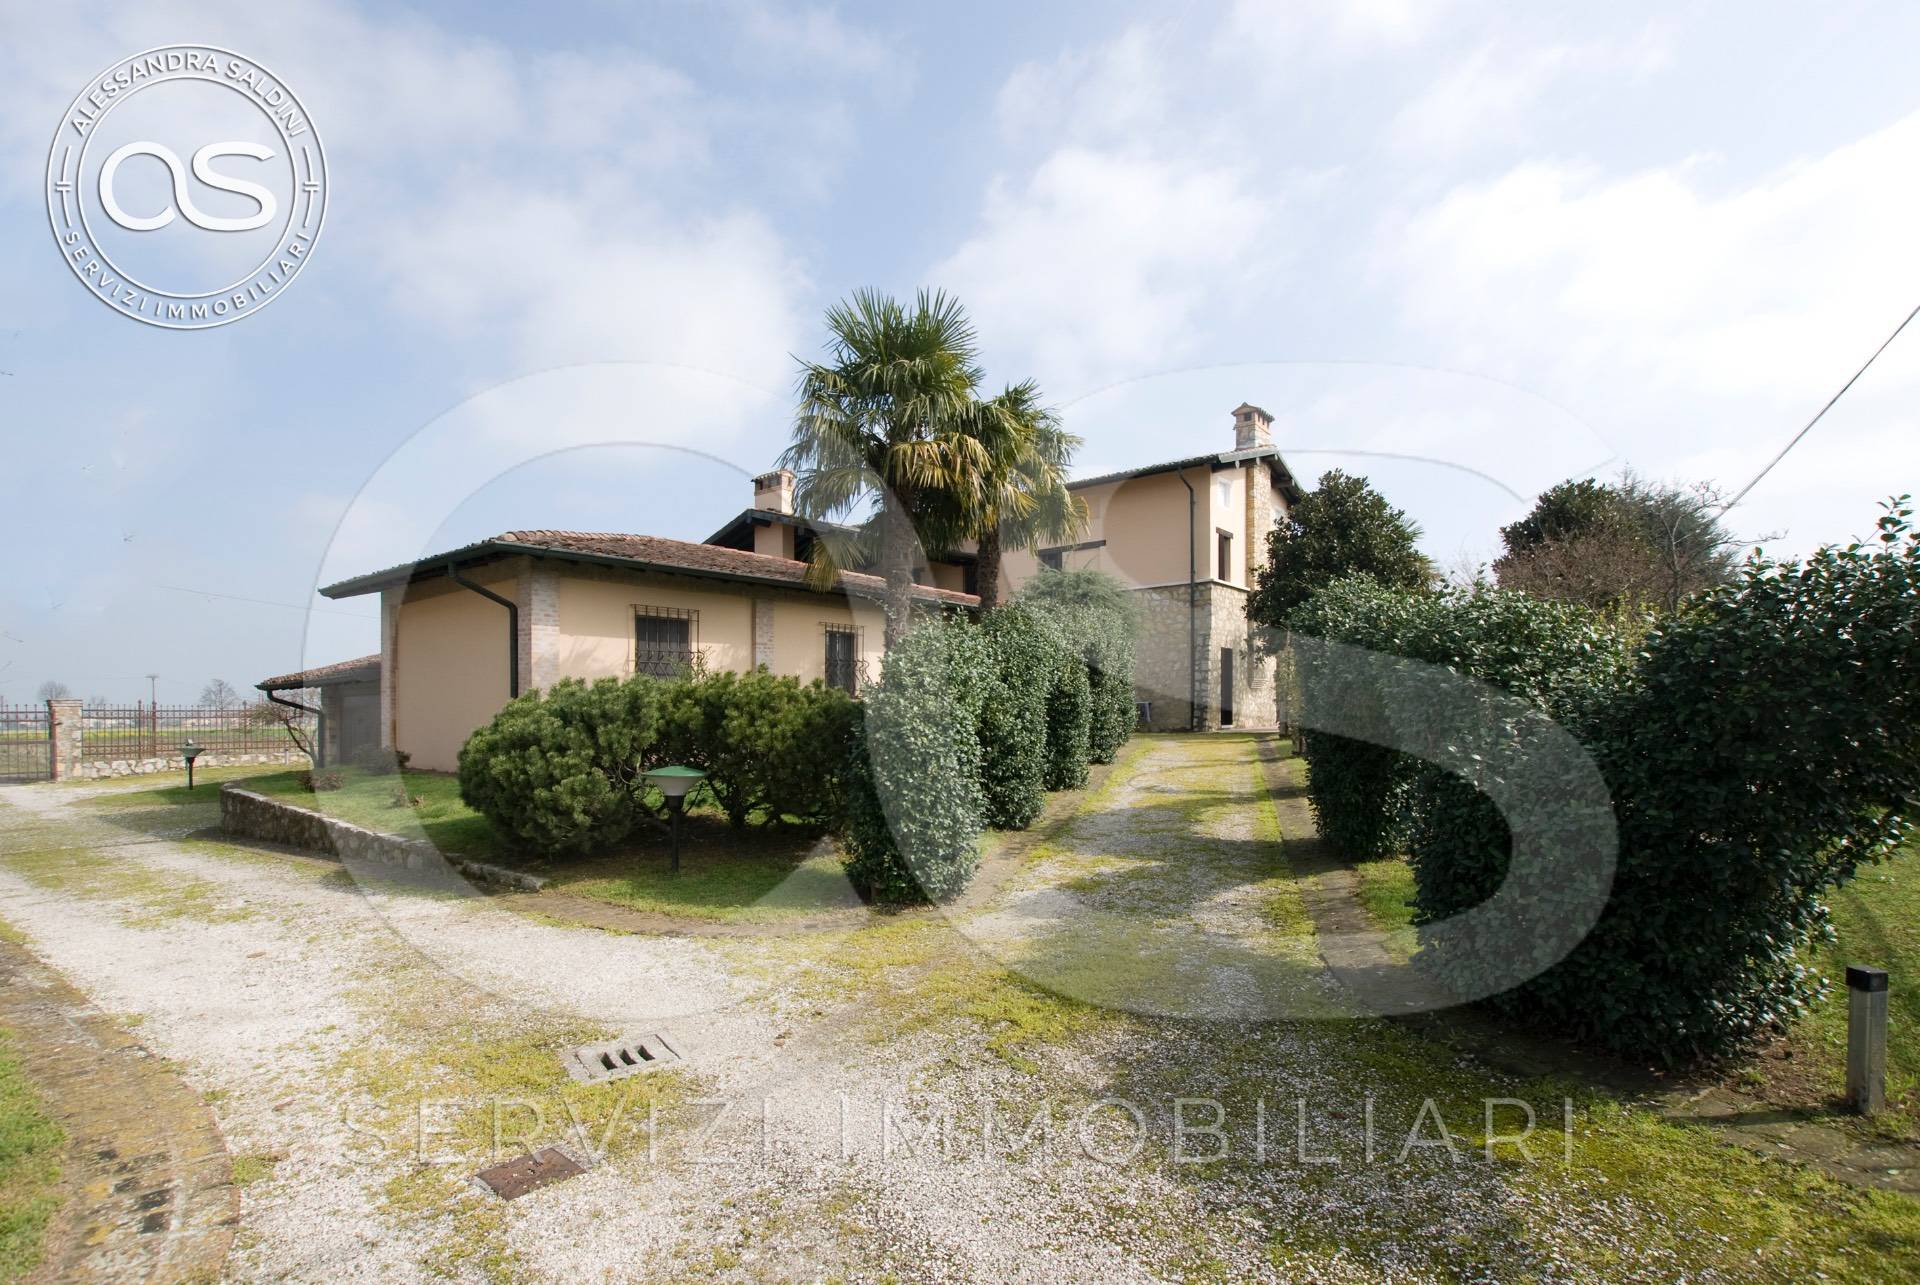 Villa in vendita a Offlaga, 10 locali, zona ano, prezzo € 420.000 | PortaleAgenzieImmobiliari.it